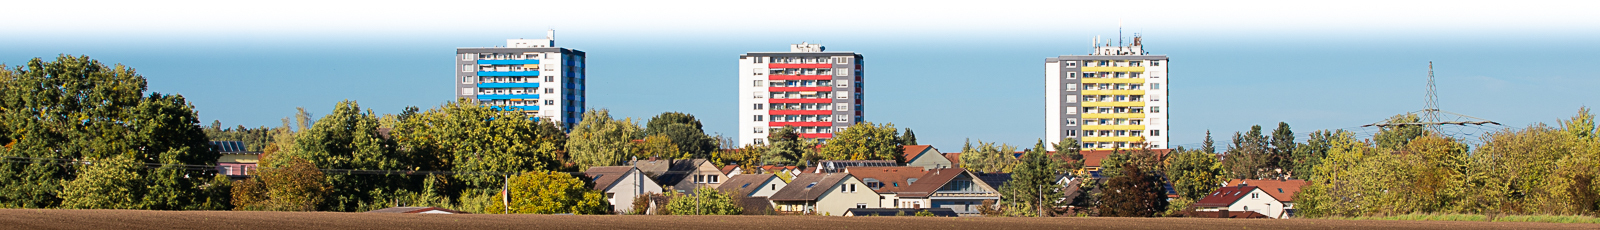 Headerbild - Bürgerforum Eichwasen 